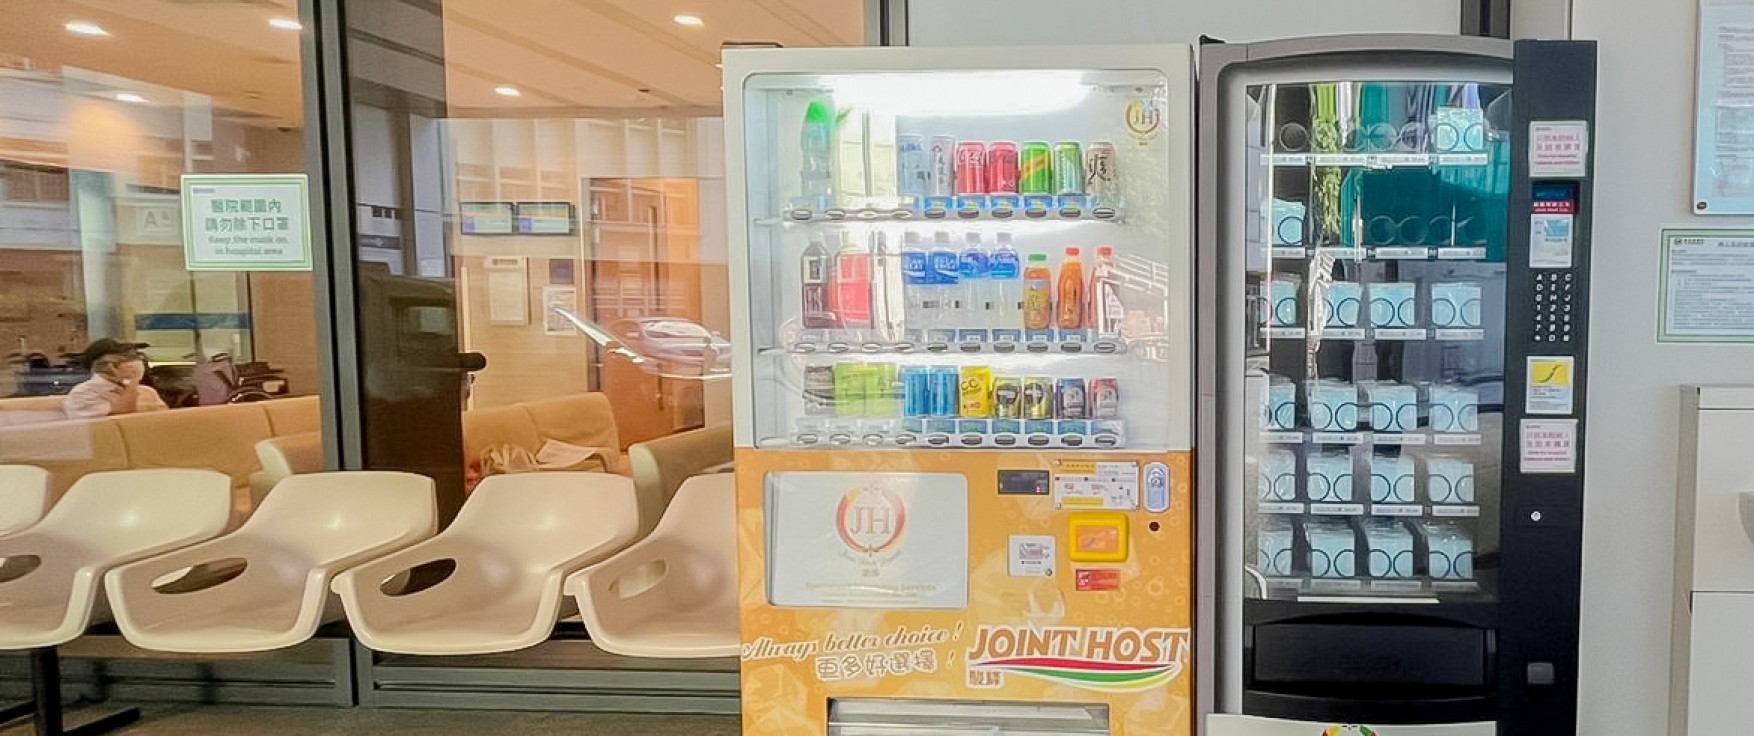 自動售賣機 Vending Machine